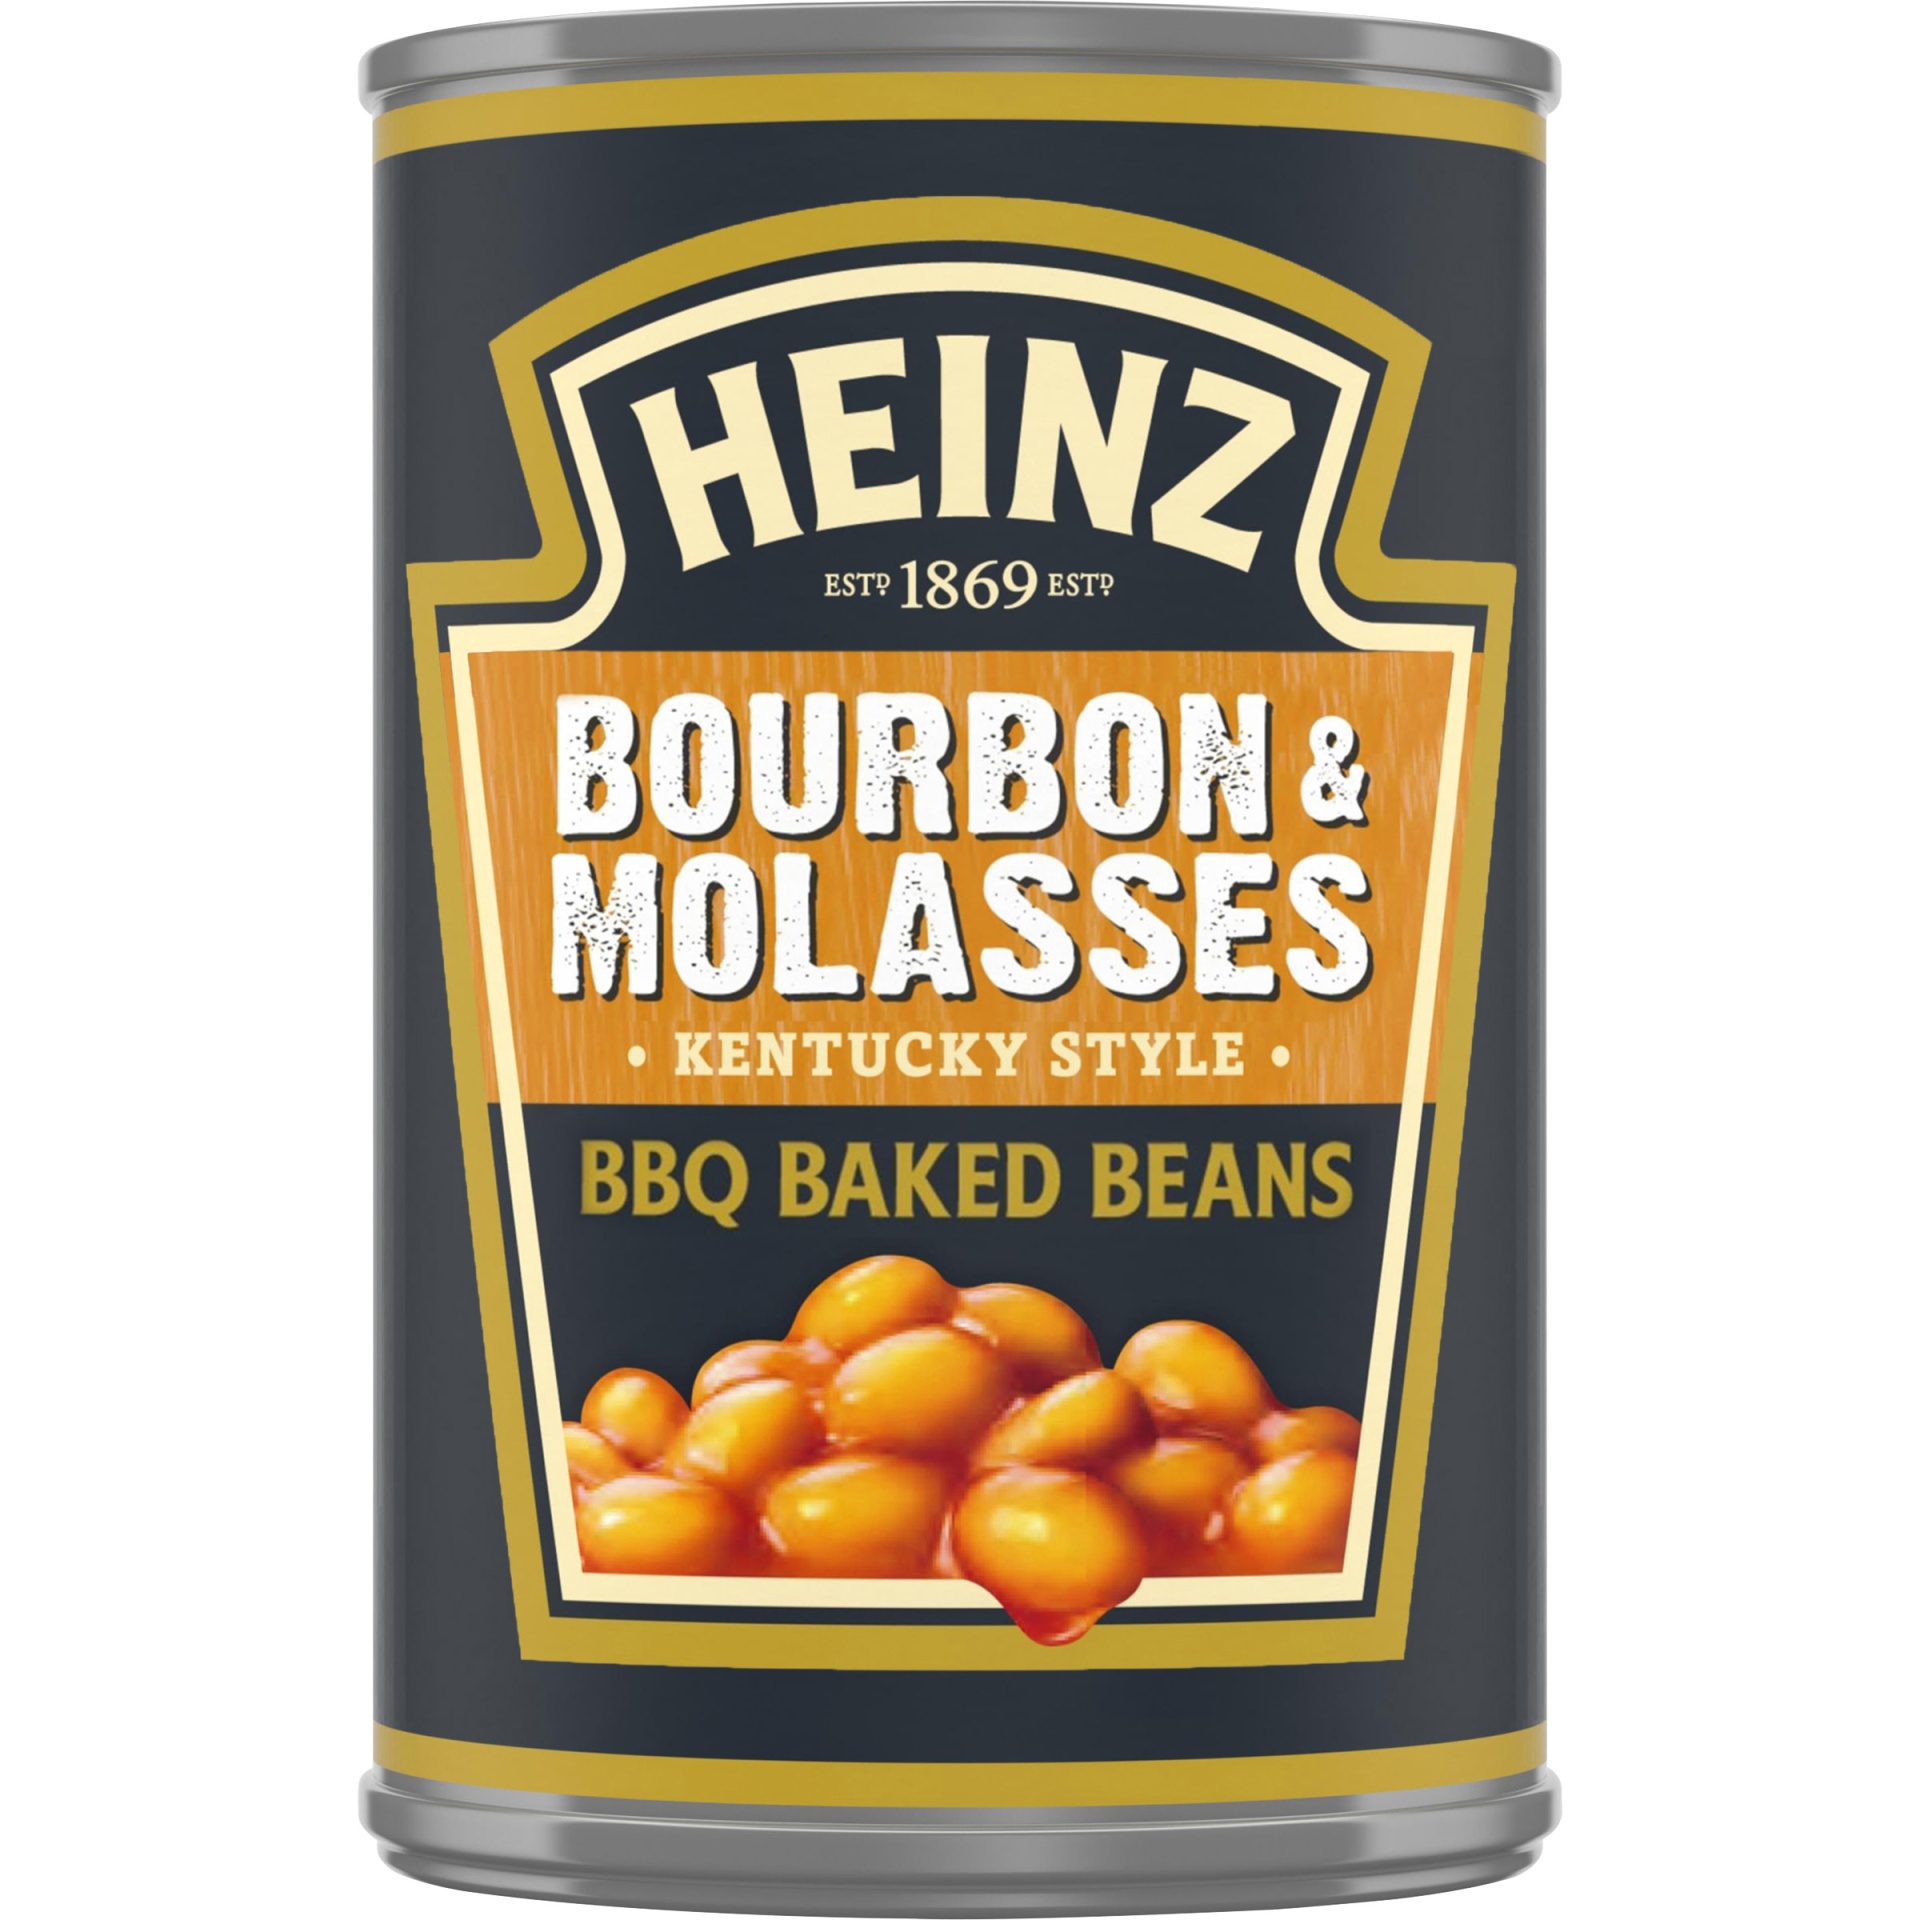 slide 1 of 1, Heinz Kentucky Style Bourbon & Molasses BBQ Baked Beans, 16 oz